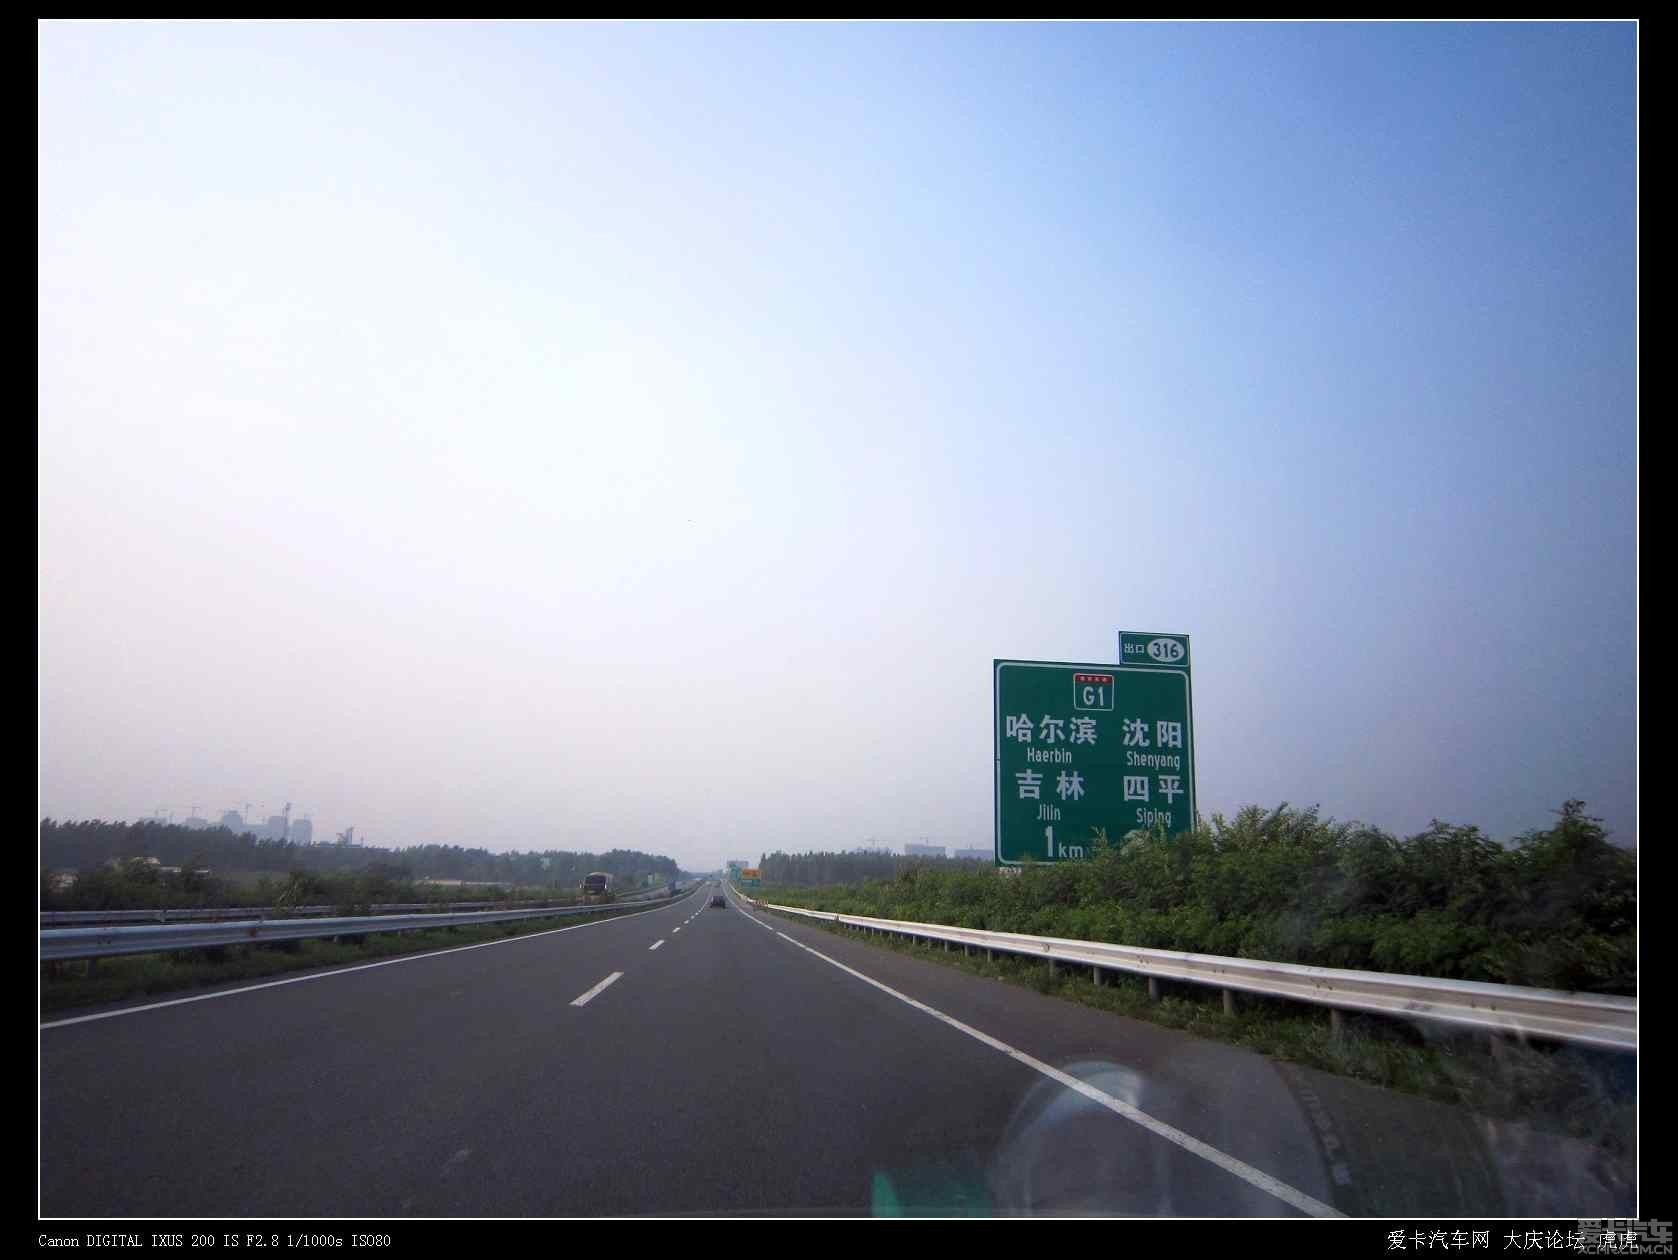 自助游论坛 2013年7月30日大庆至吉林… 还有一公里进入绕城高速,这段